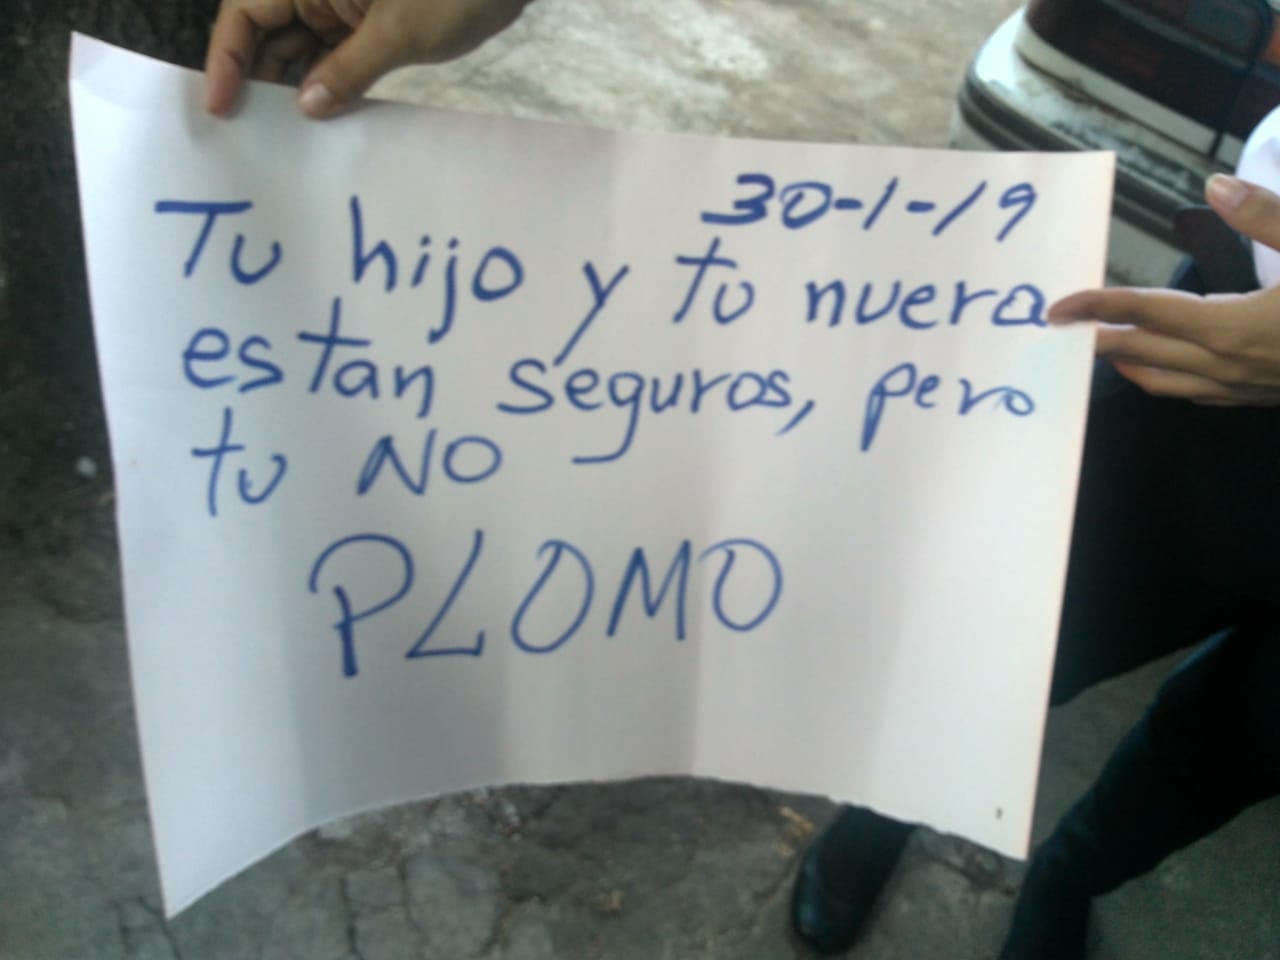 Mensaje de paramilitares contra familiares de periodistas exiliados. Foto: Cortesía.